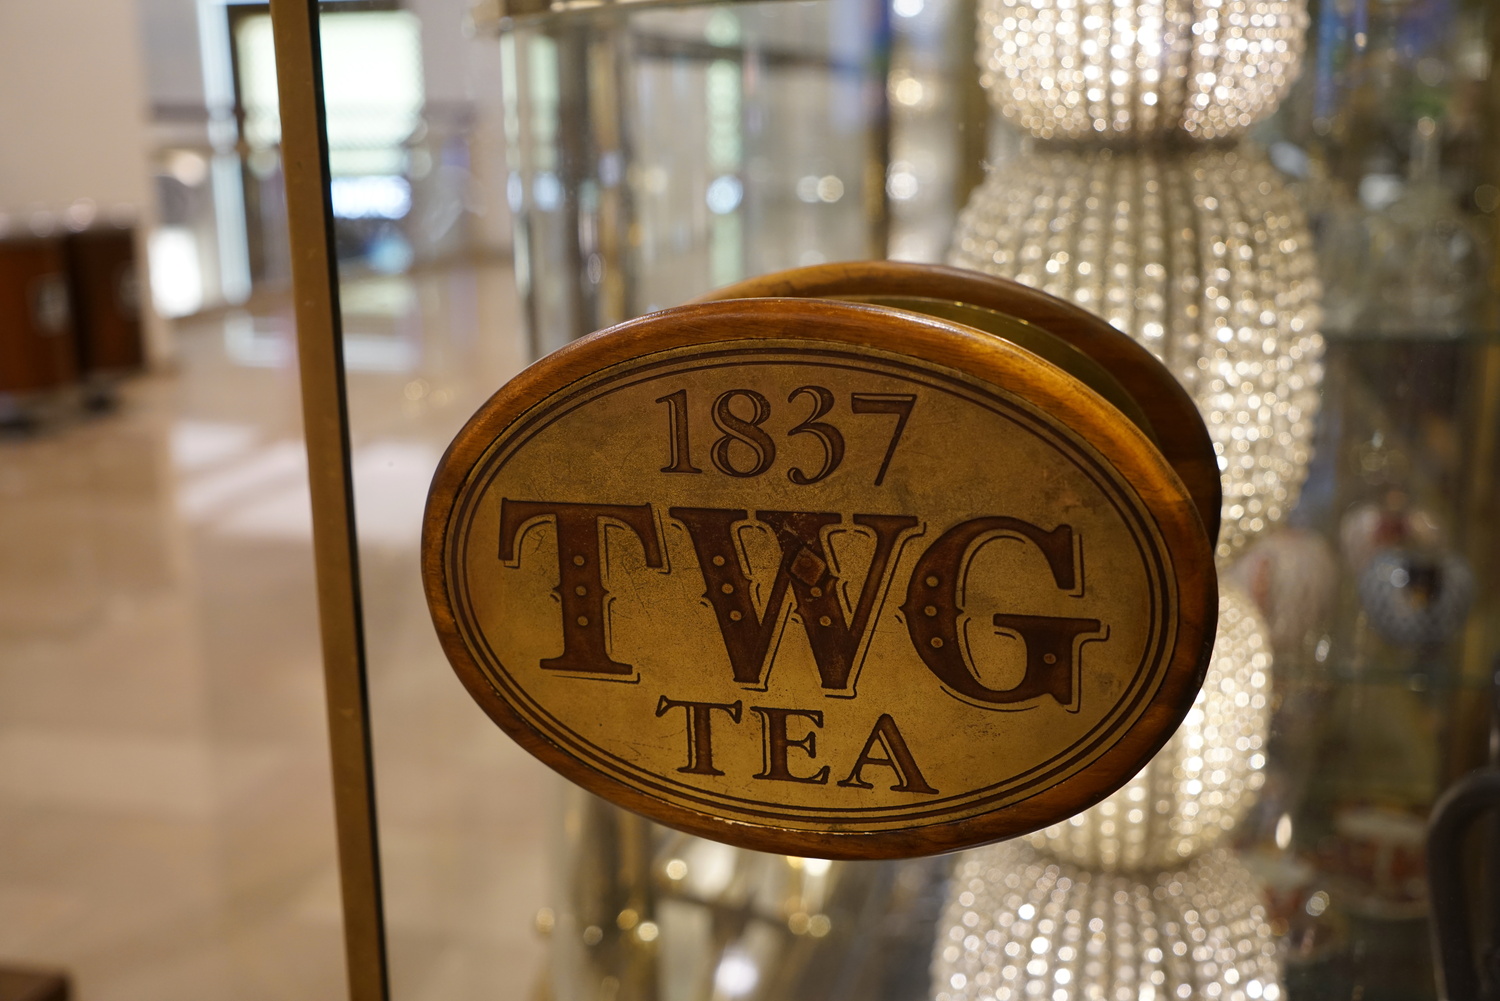 台北101下午茶、信義區貴婦午茶推薦｜來自新加坡的世界奢華茶葉品牌『1837 TWG Tea 』三層下午茶、台北101鼎極卡 美好時光雙人茗茶套餐 @梅格(Angelababy)享樂日記